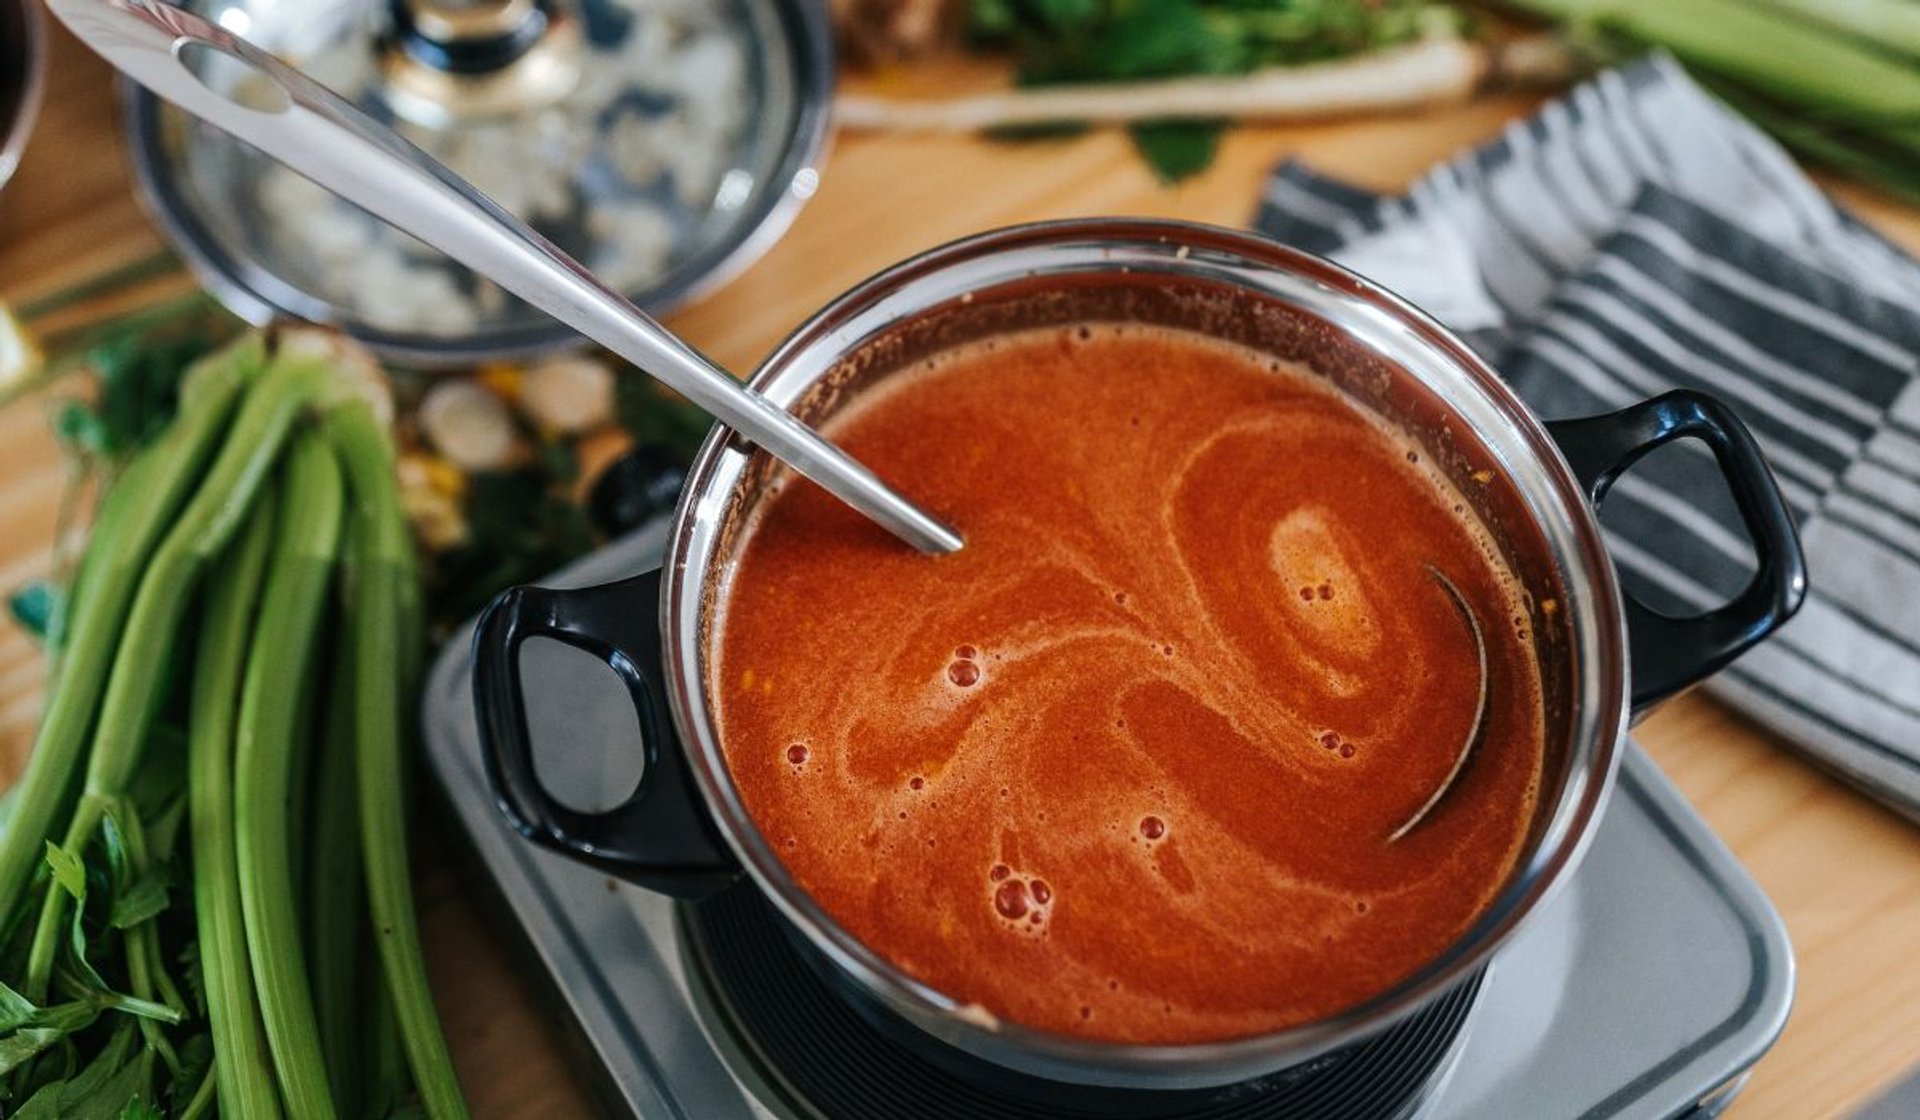 Kuroń jest mistrzem w gotowaniu aksamitnej zupy pomidorowej. Do zagęszczenia nie używa mąki